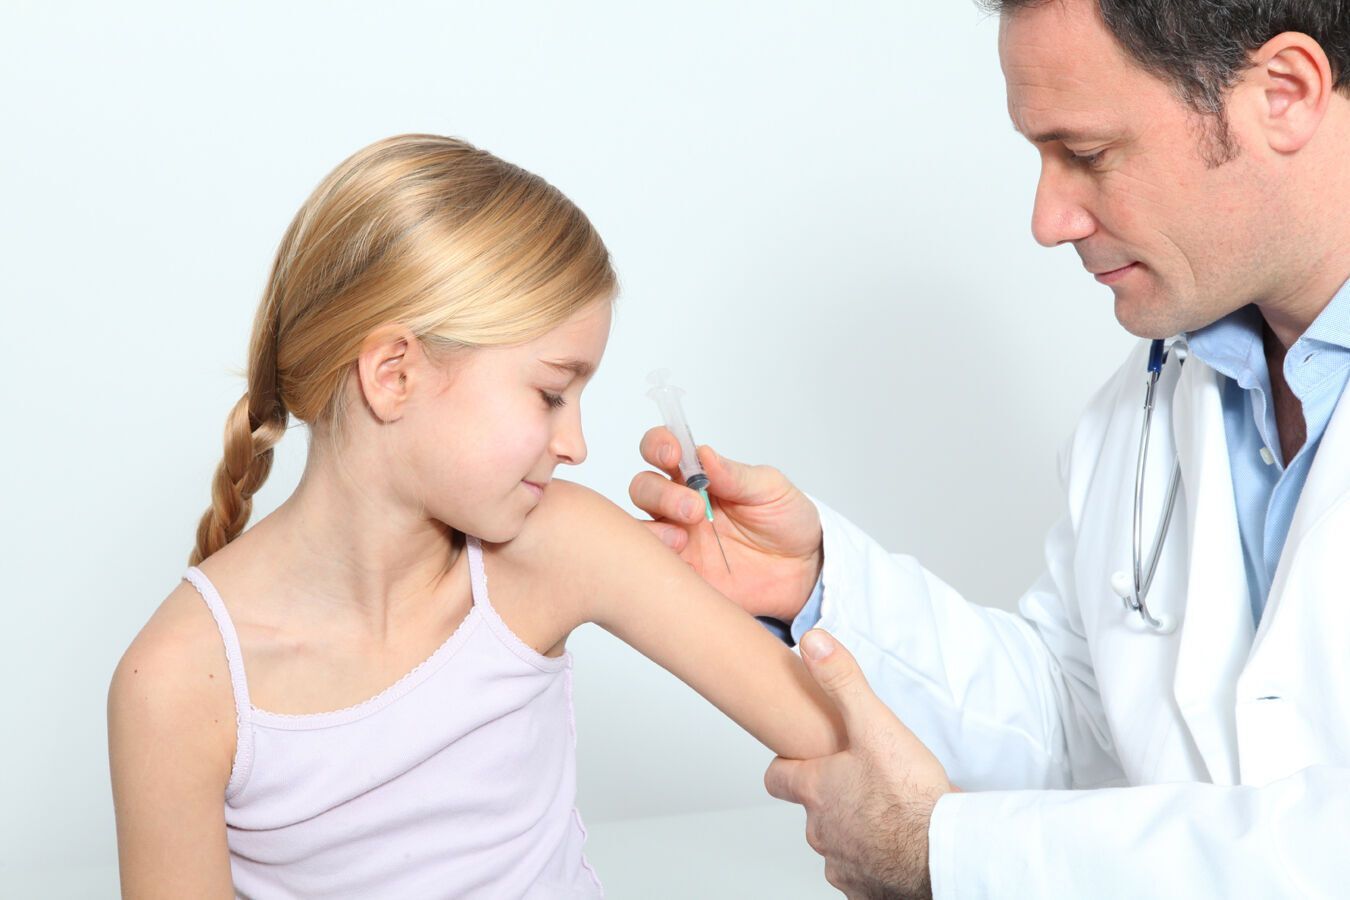 Сделать прививку можно в коммунальном медучреждении, в роддоме или в частной клинике